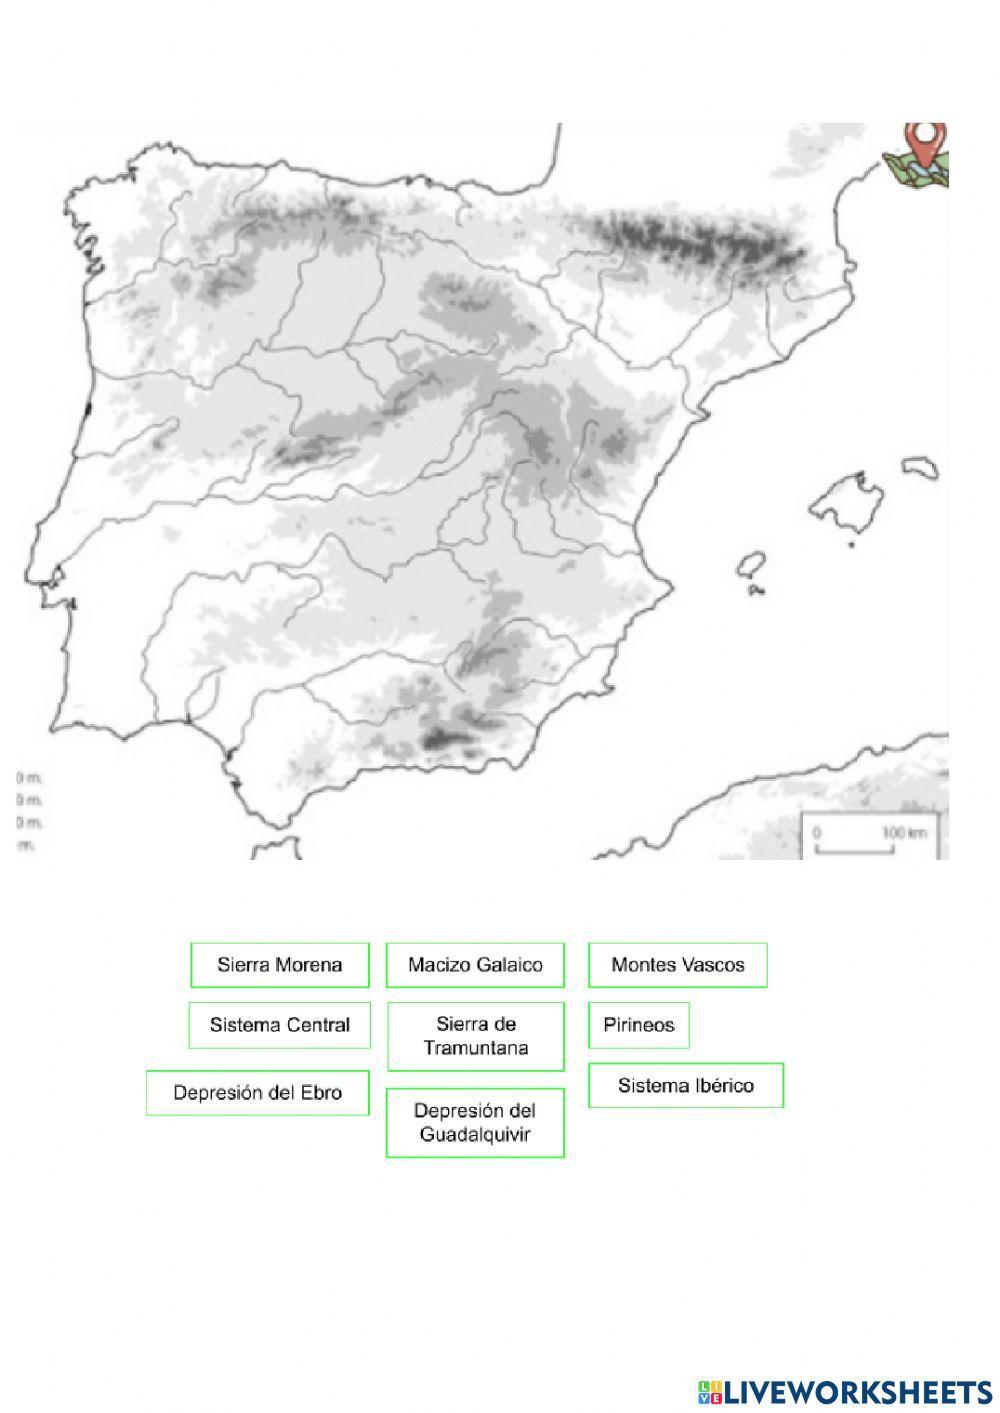 Mapa ríos, montañas, cabos y golfos de España